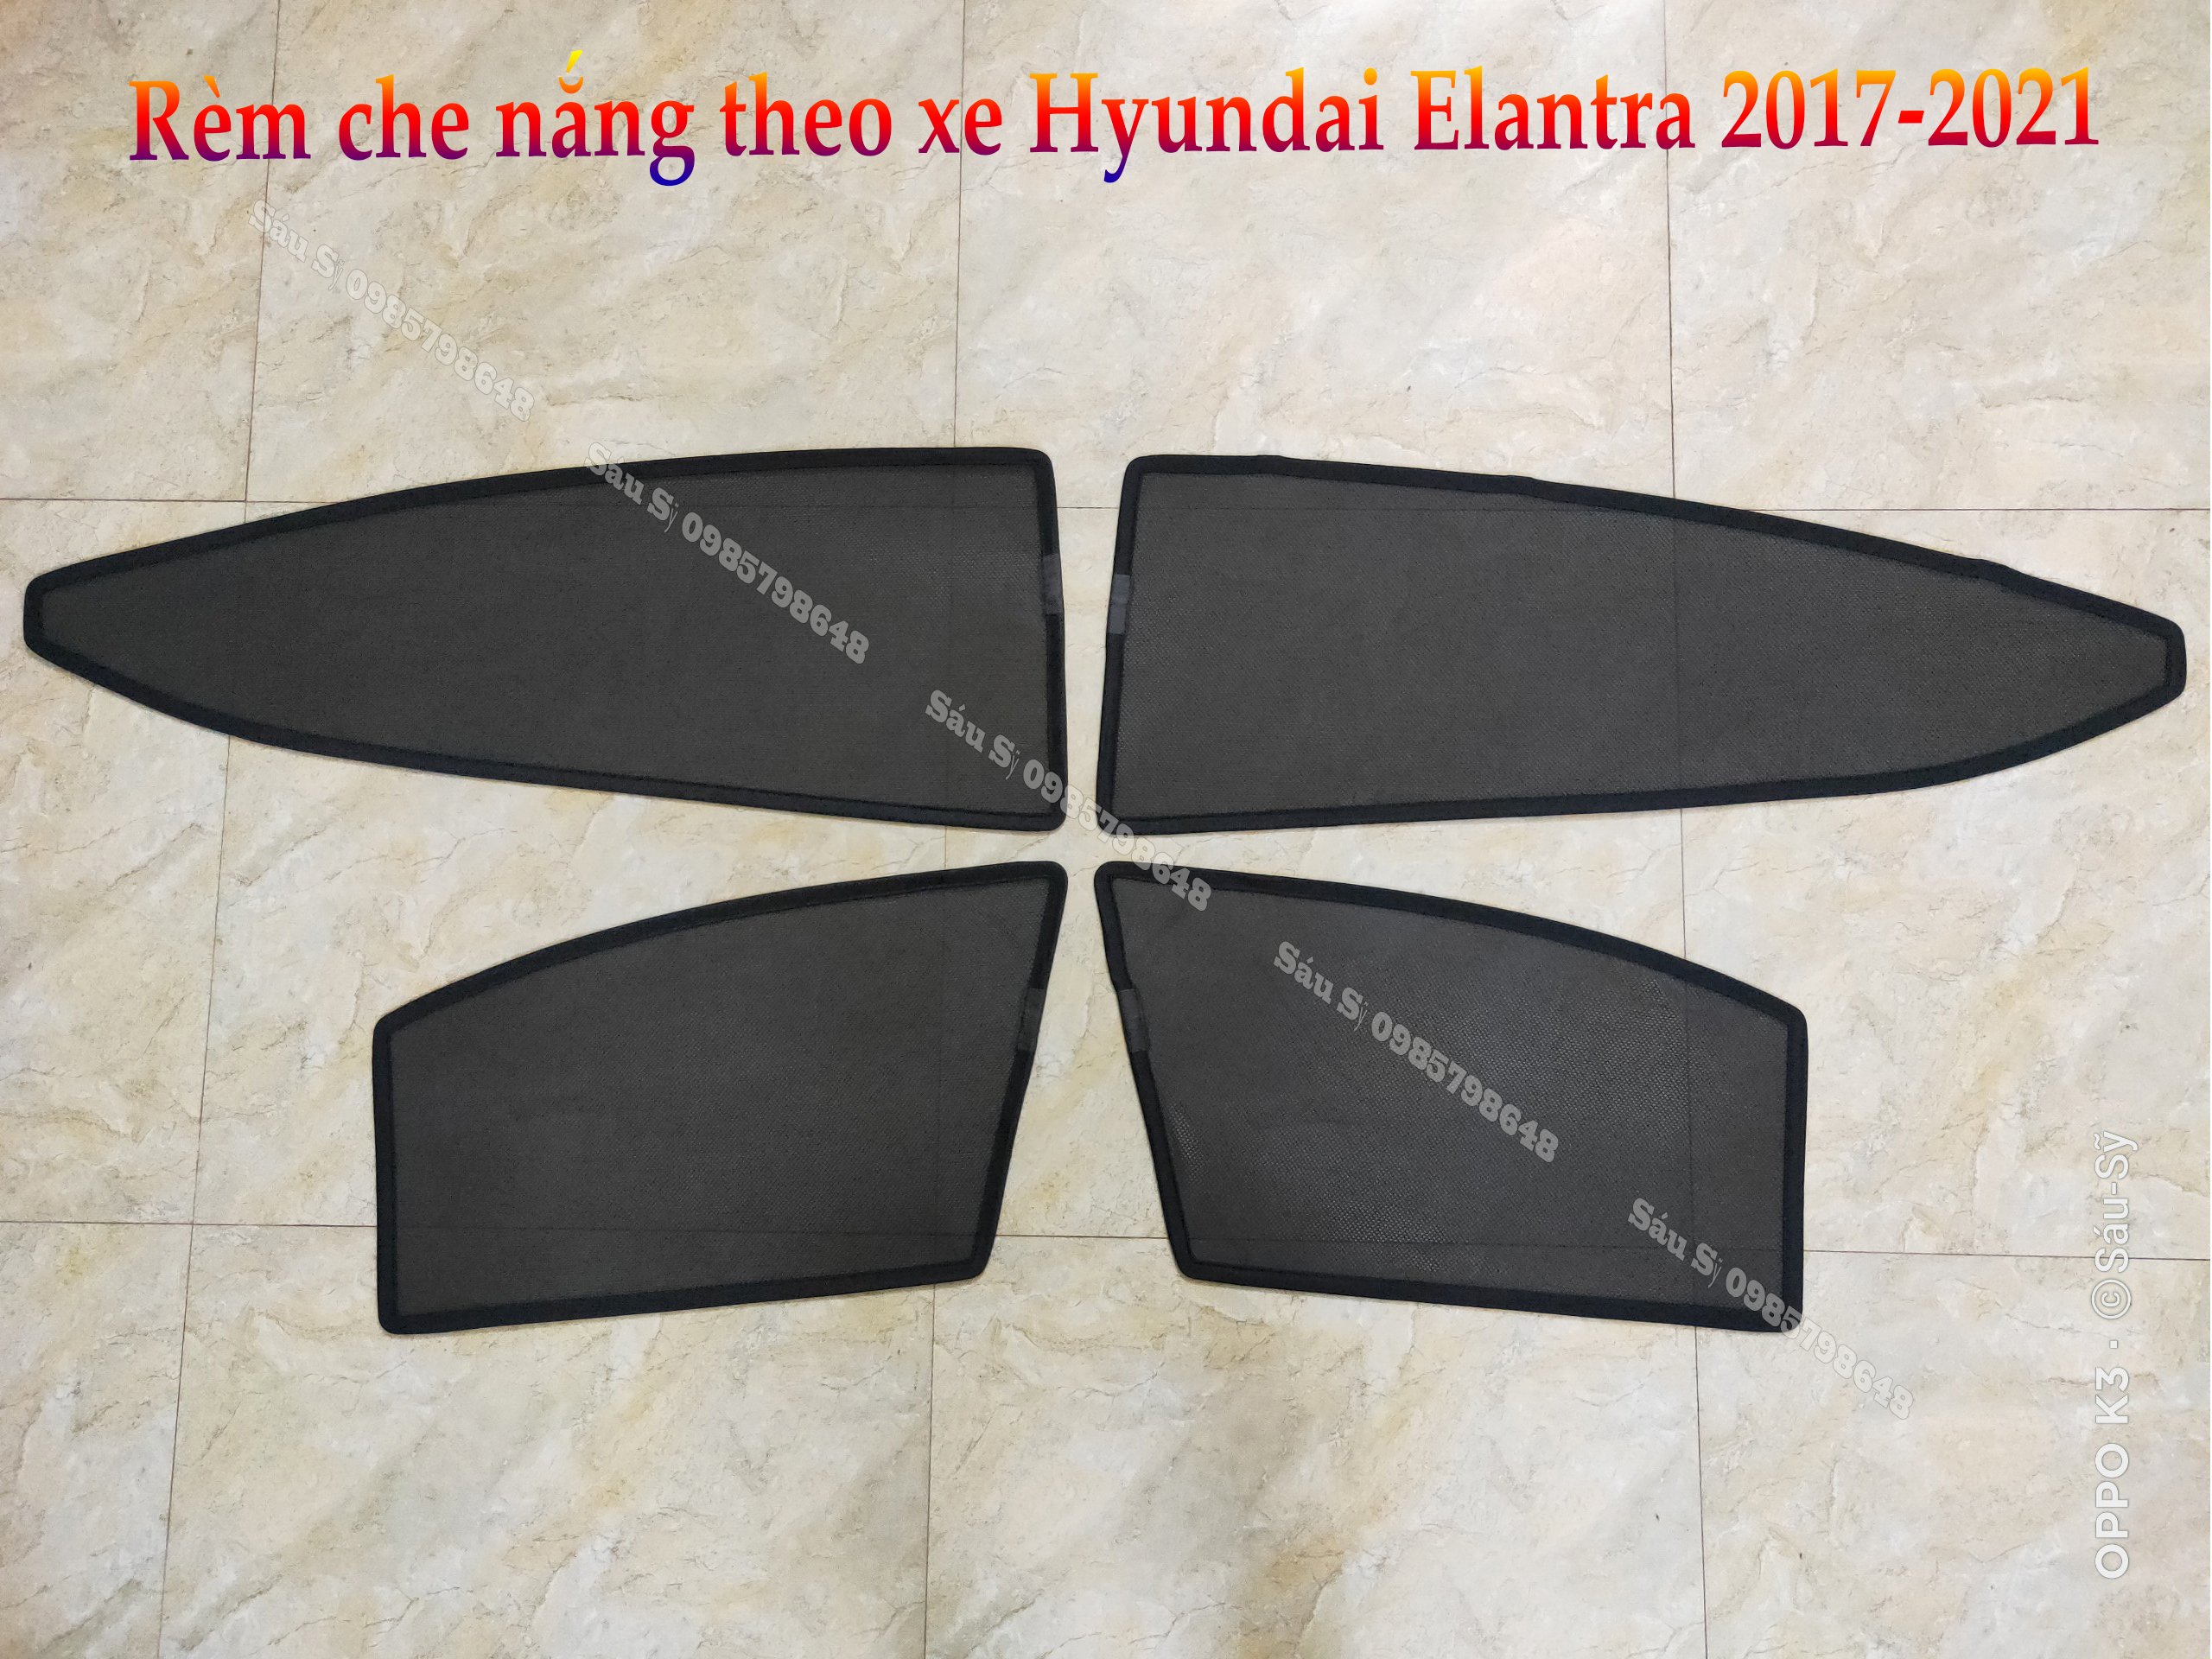 Bộ 4 tấm Rèm che nắng theo xe ô tô Hyundai ELANTRA 2017-2021, Tấm che nắng ô tô nam châm tự dính